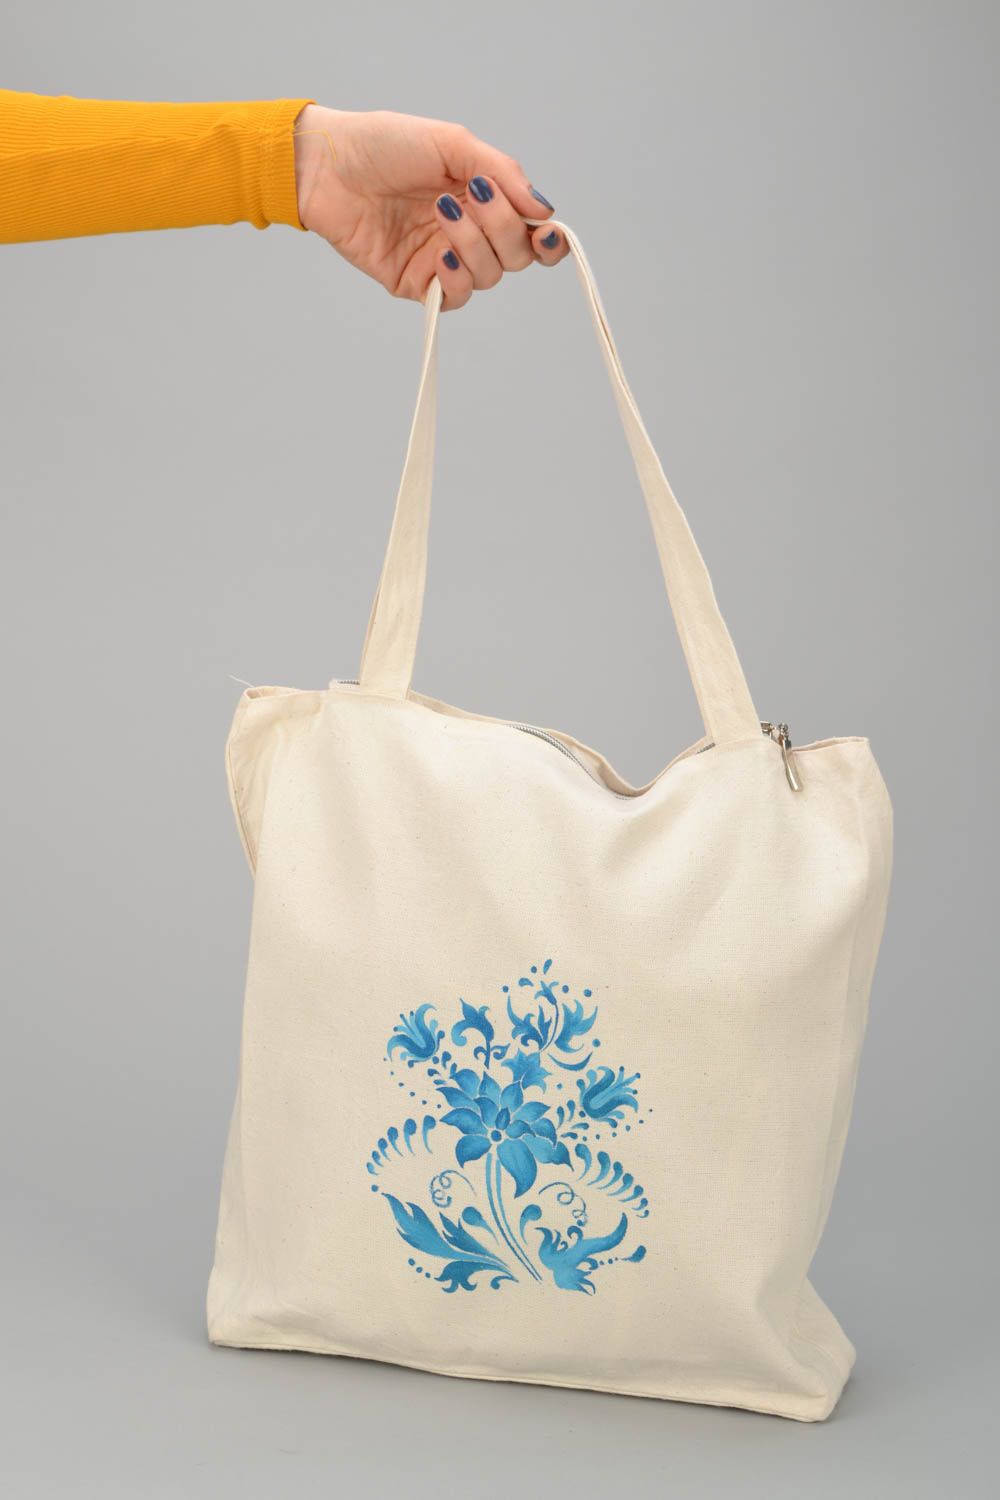 Textil Handtasche in Weiß mit blauen Blumen foto 2